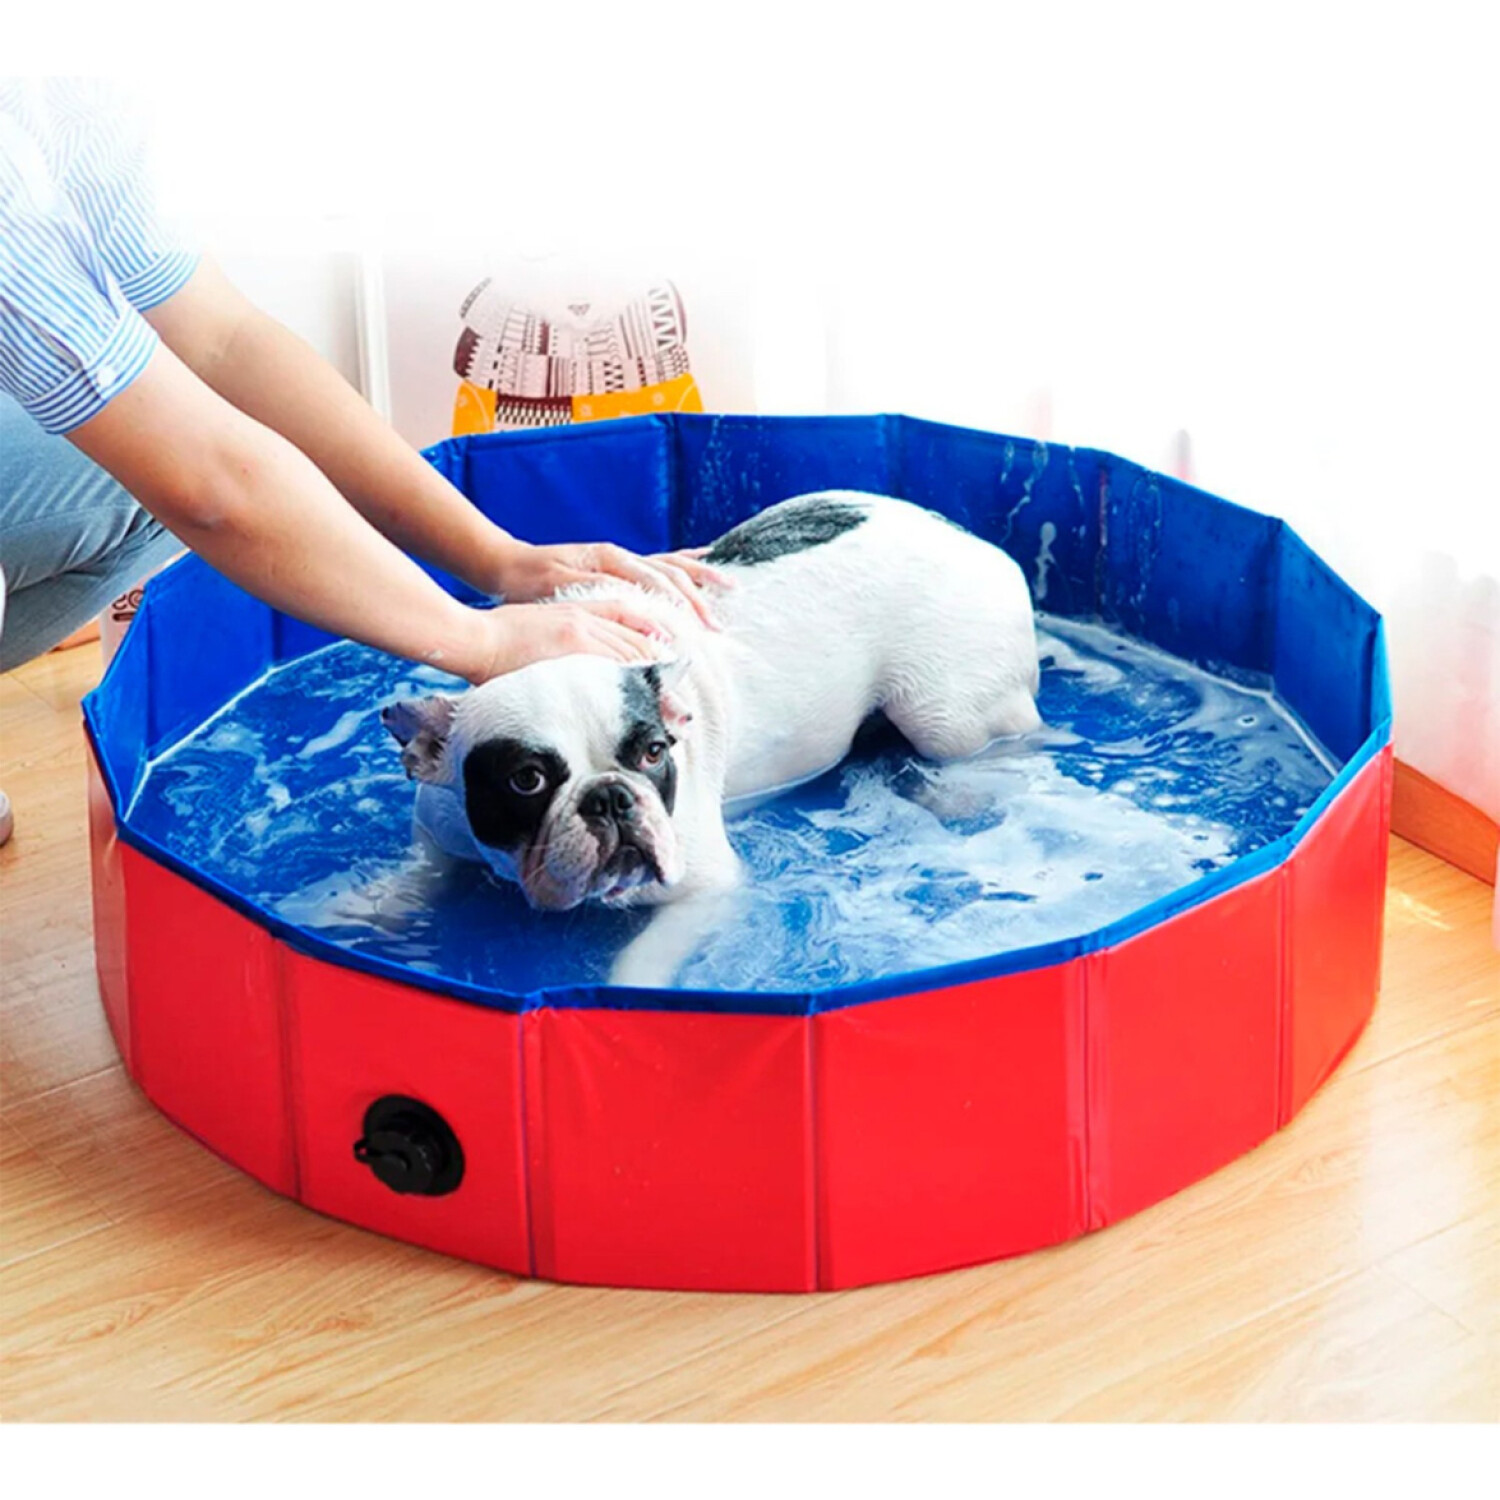 Originales piscinas para perros